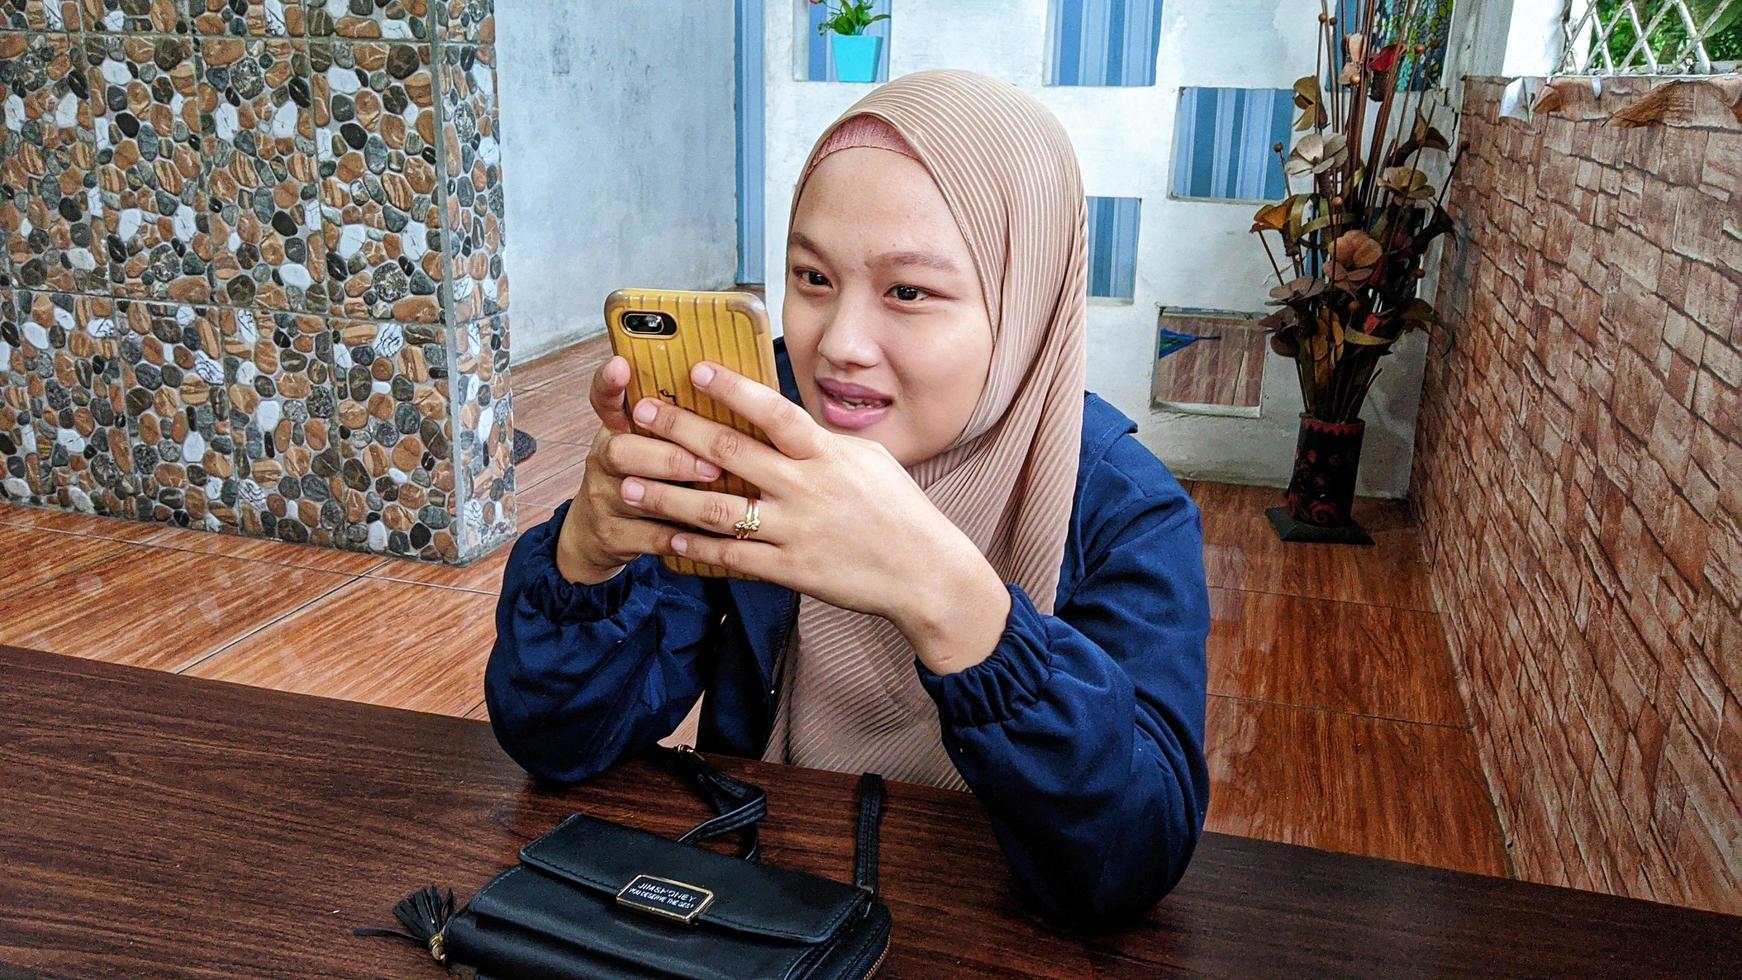 cianjur regency, west java, indonesien am 7. april 2022 - eine indonesische muslimische frau, die einen hijab trägt, hält ein smartphone in der hand. foto